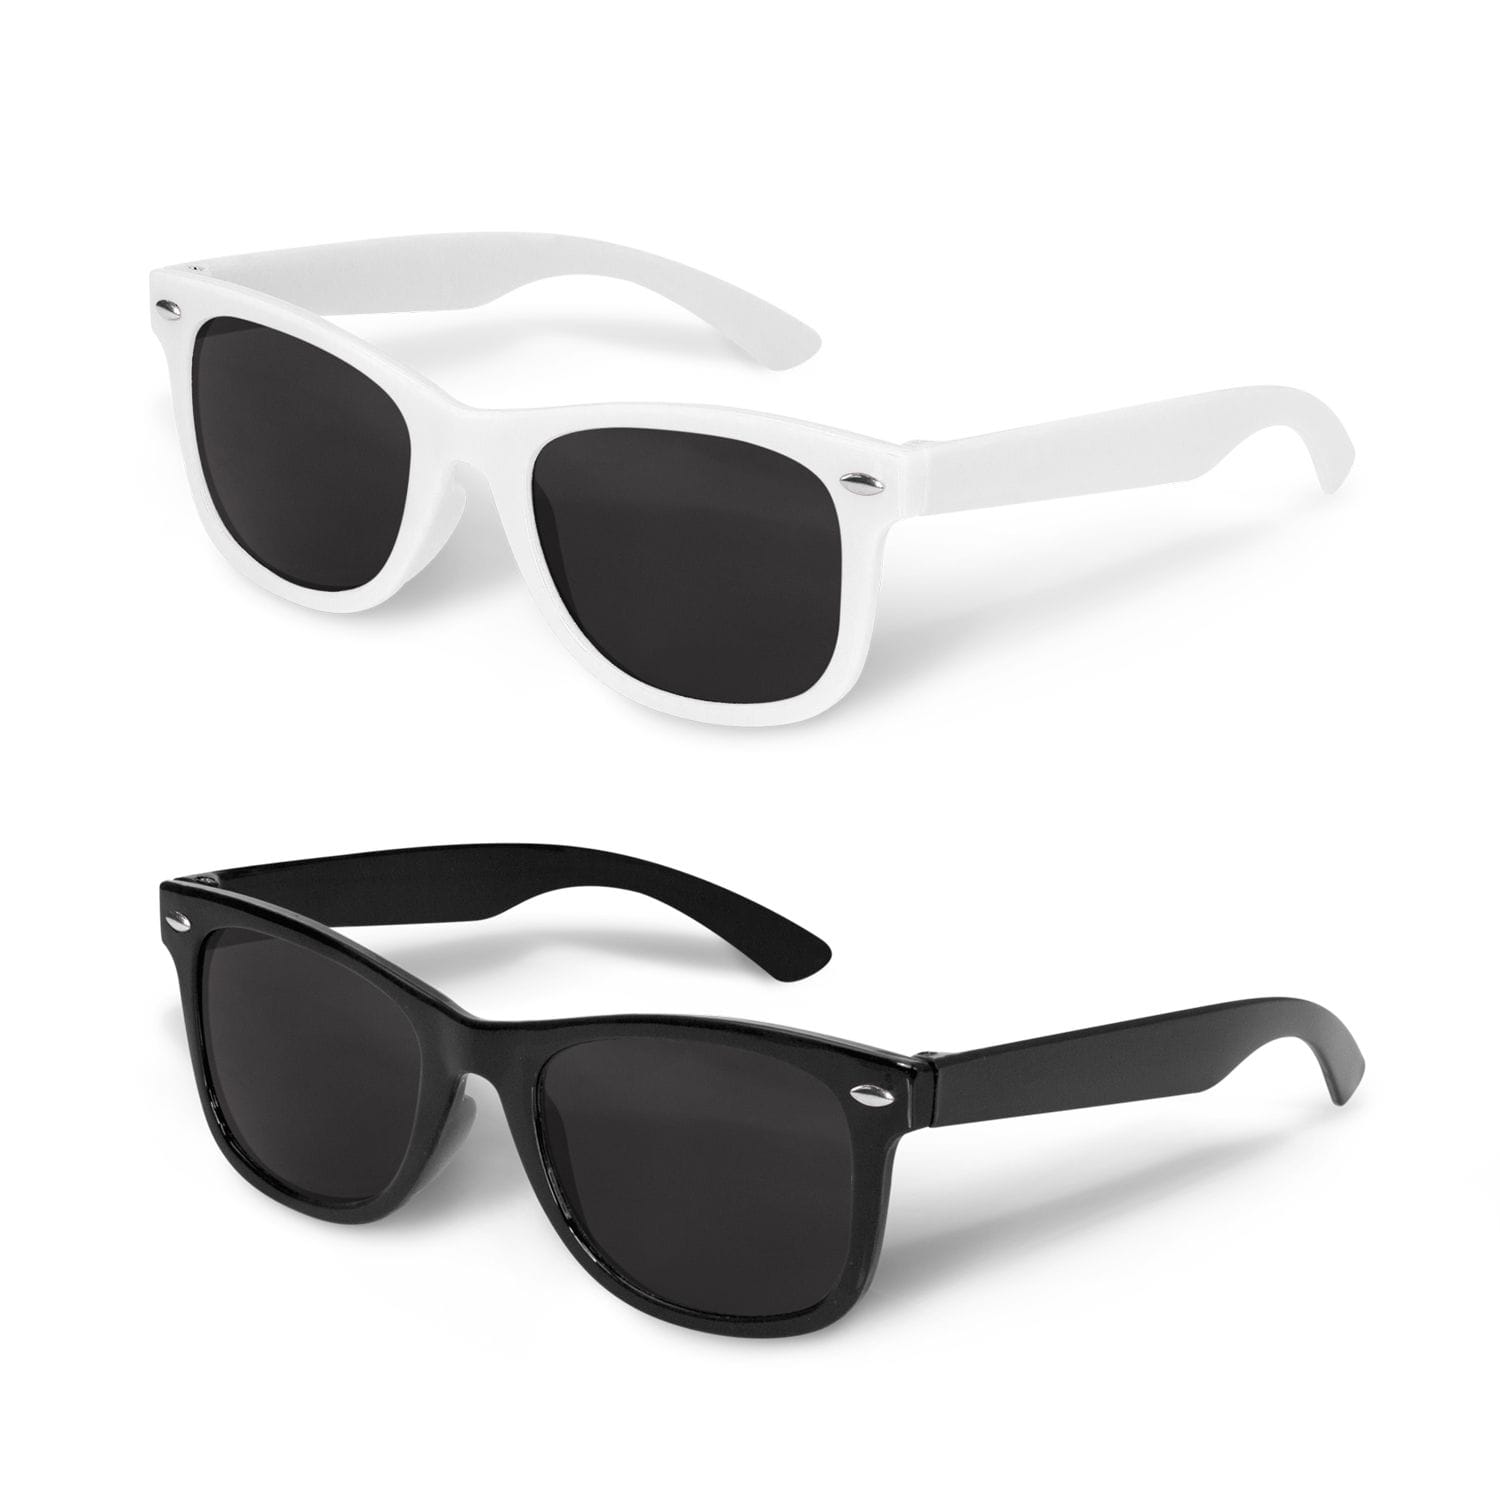 Malibu kids sunglasses range